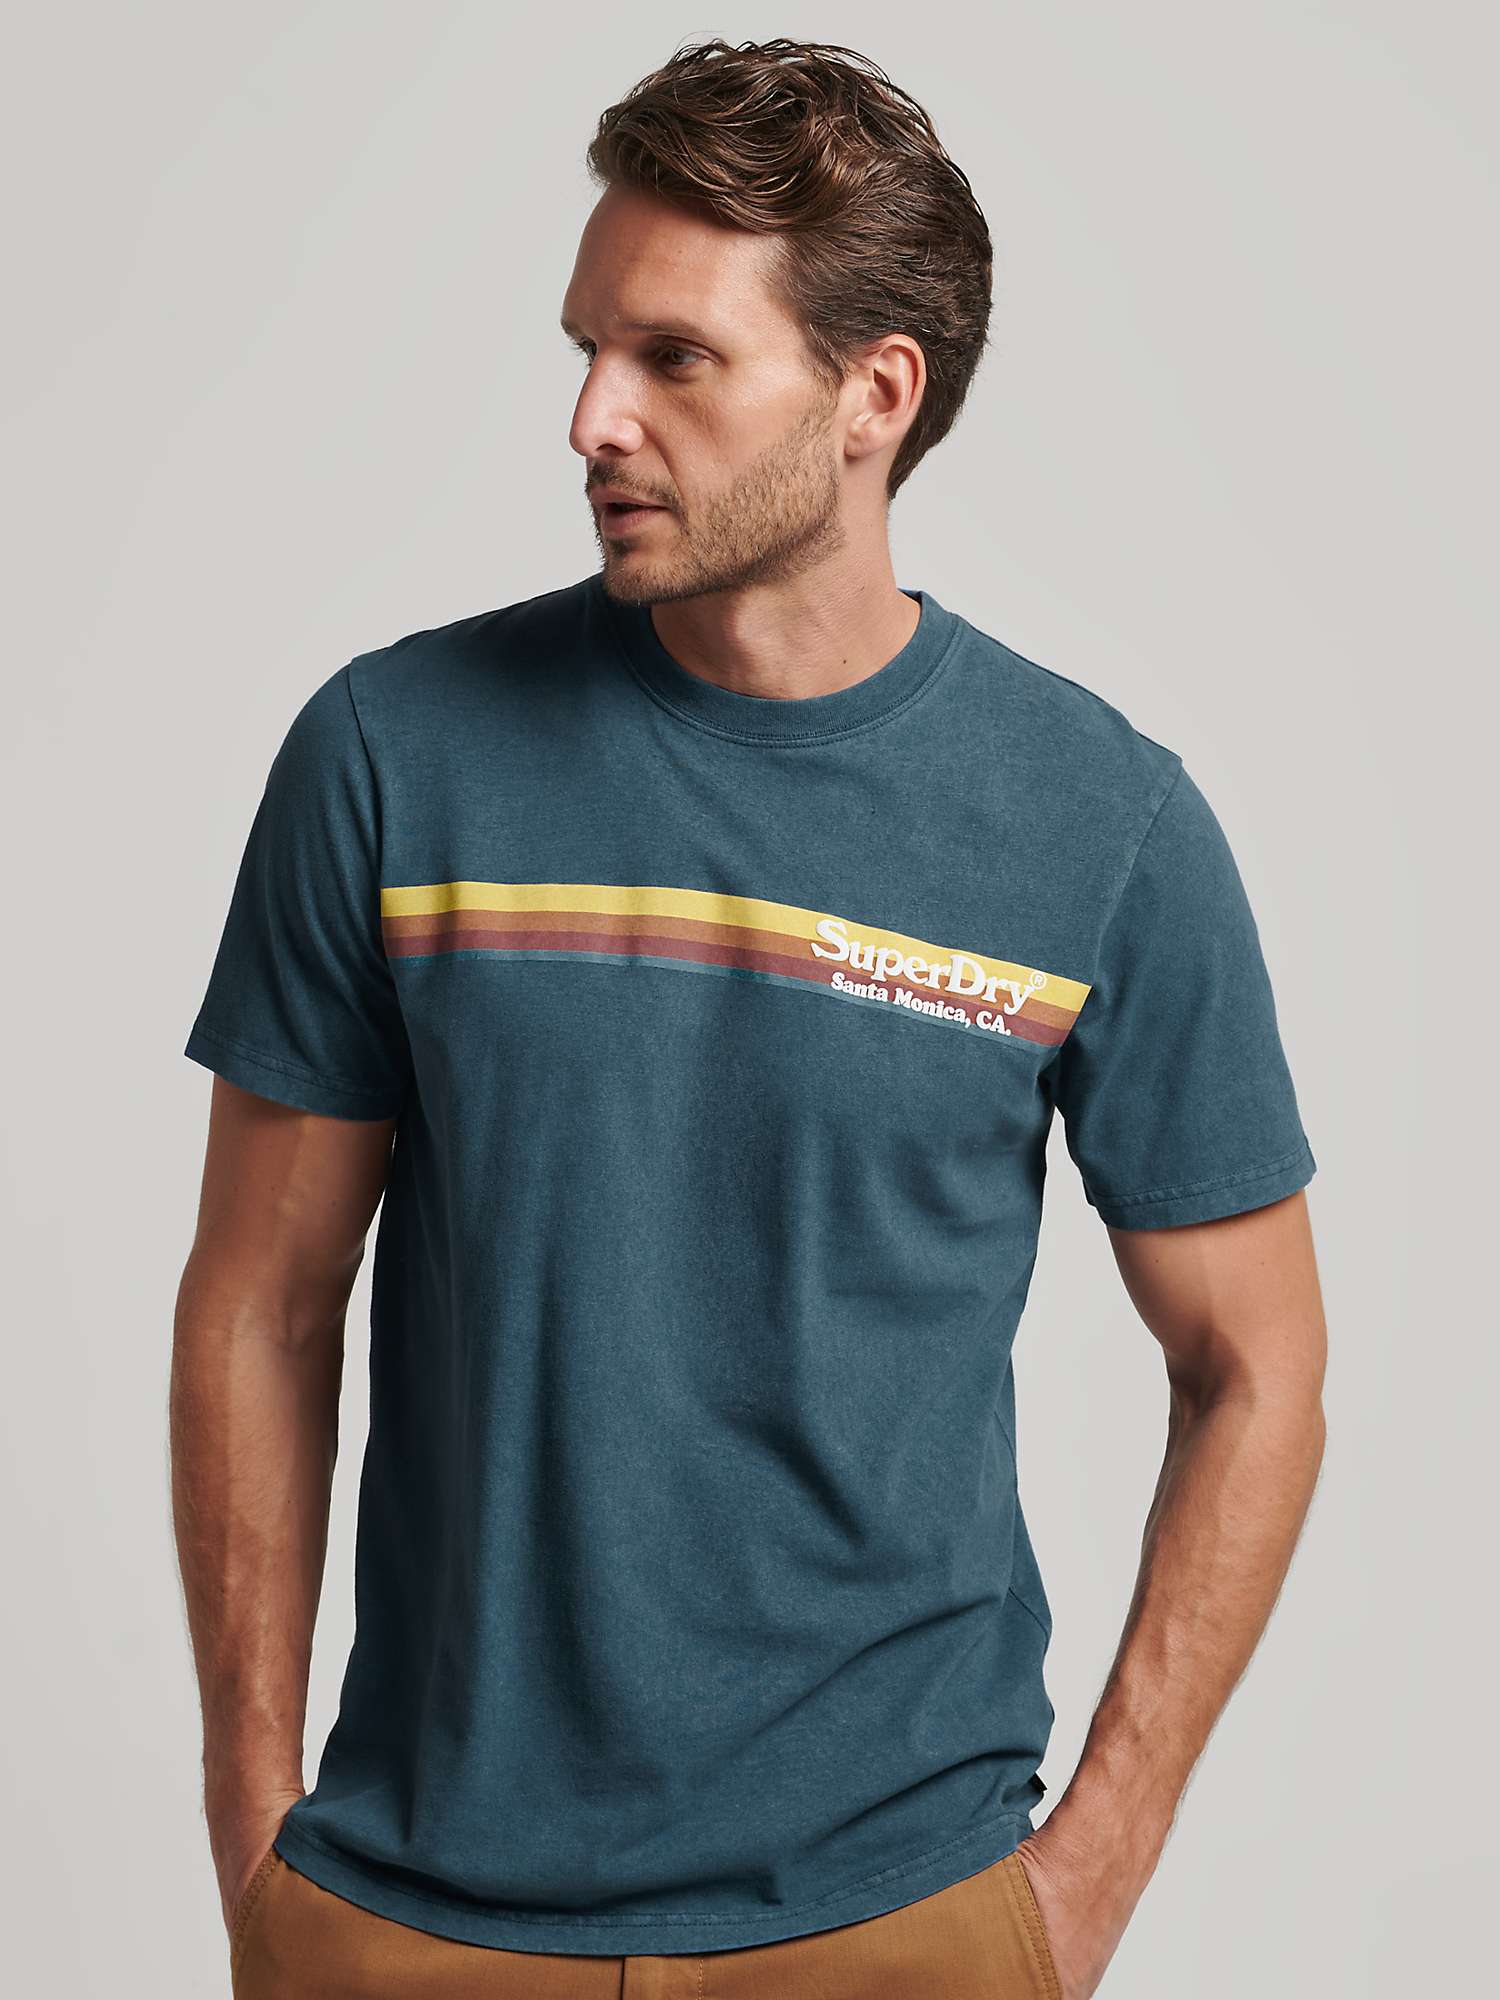 Buy Superdry Vintage Venue T-Shirt Online at johnlewis.com